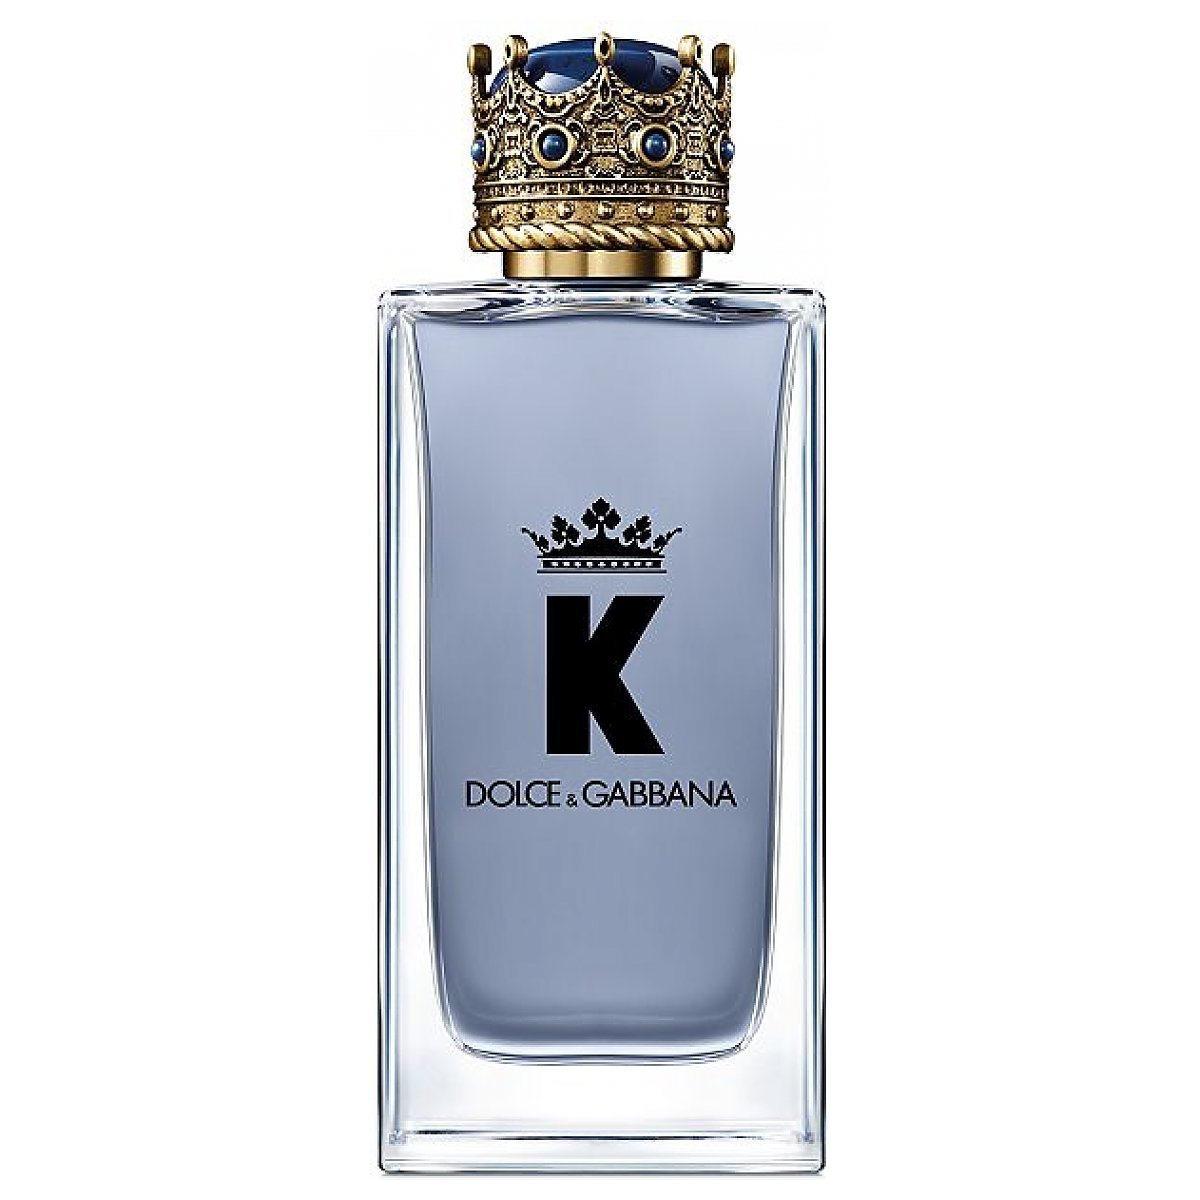 Dolce&Gabbana K by Dolce&Gabbana Woda toaletowa spray 150ml - Perfumeria Dolce.pl